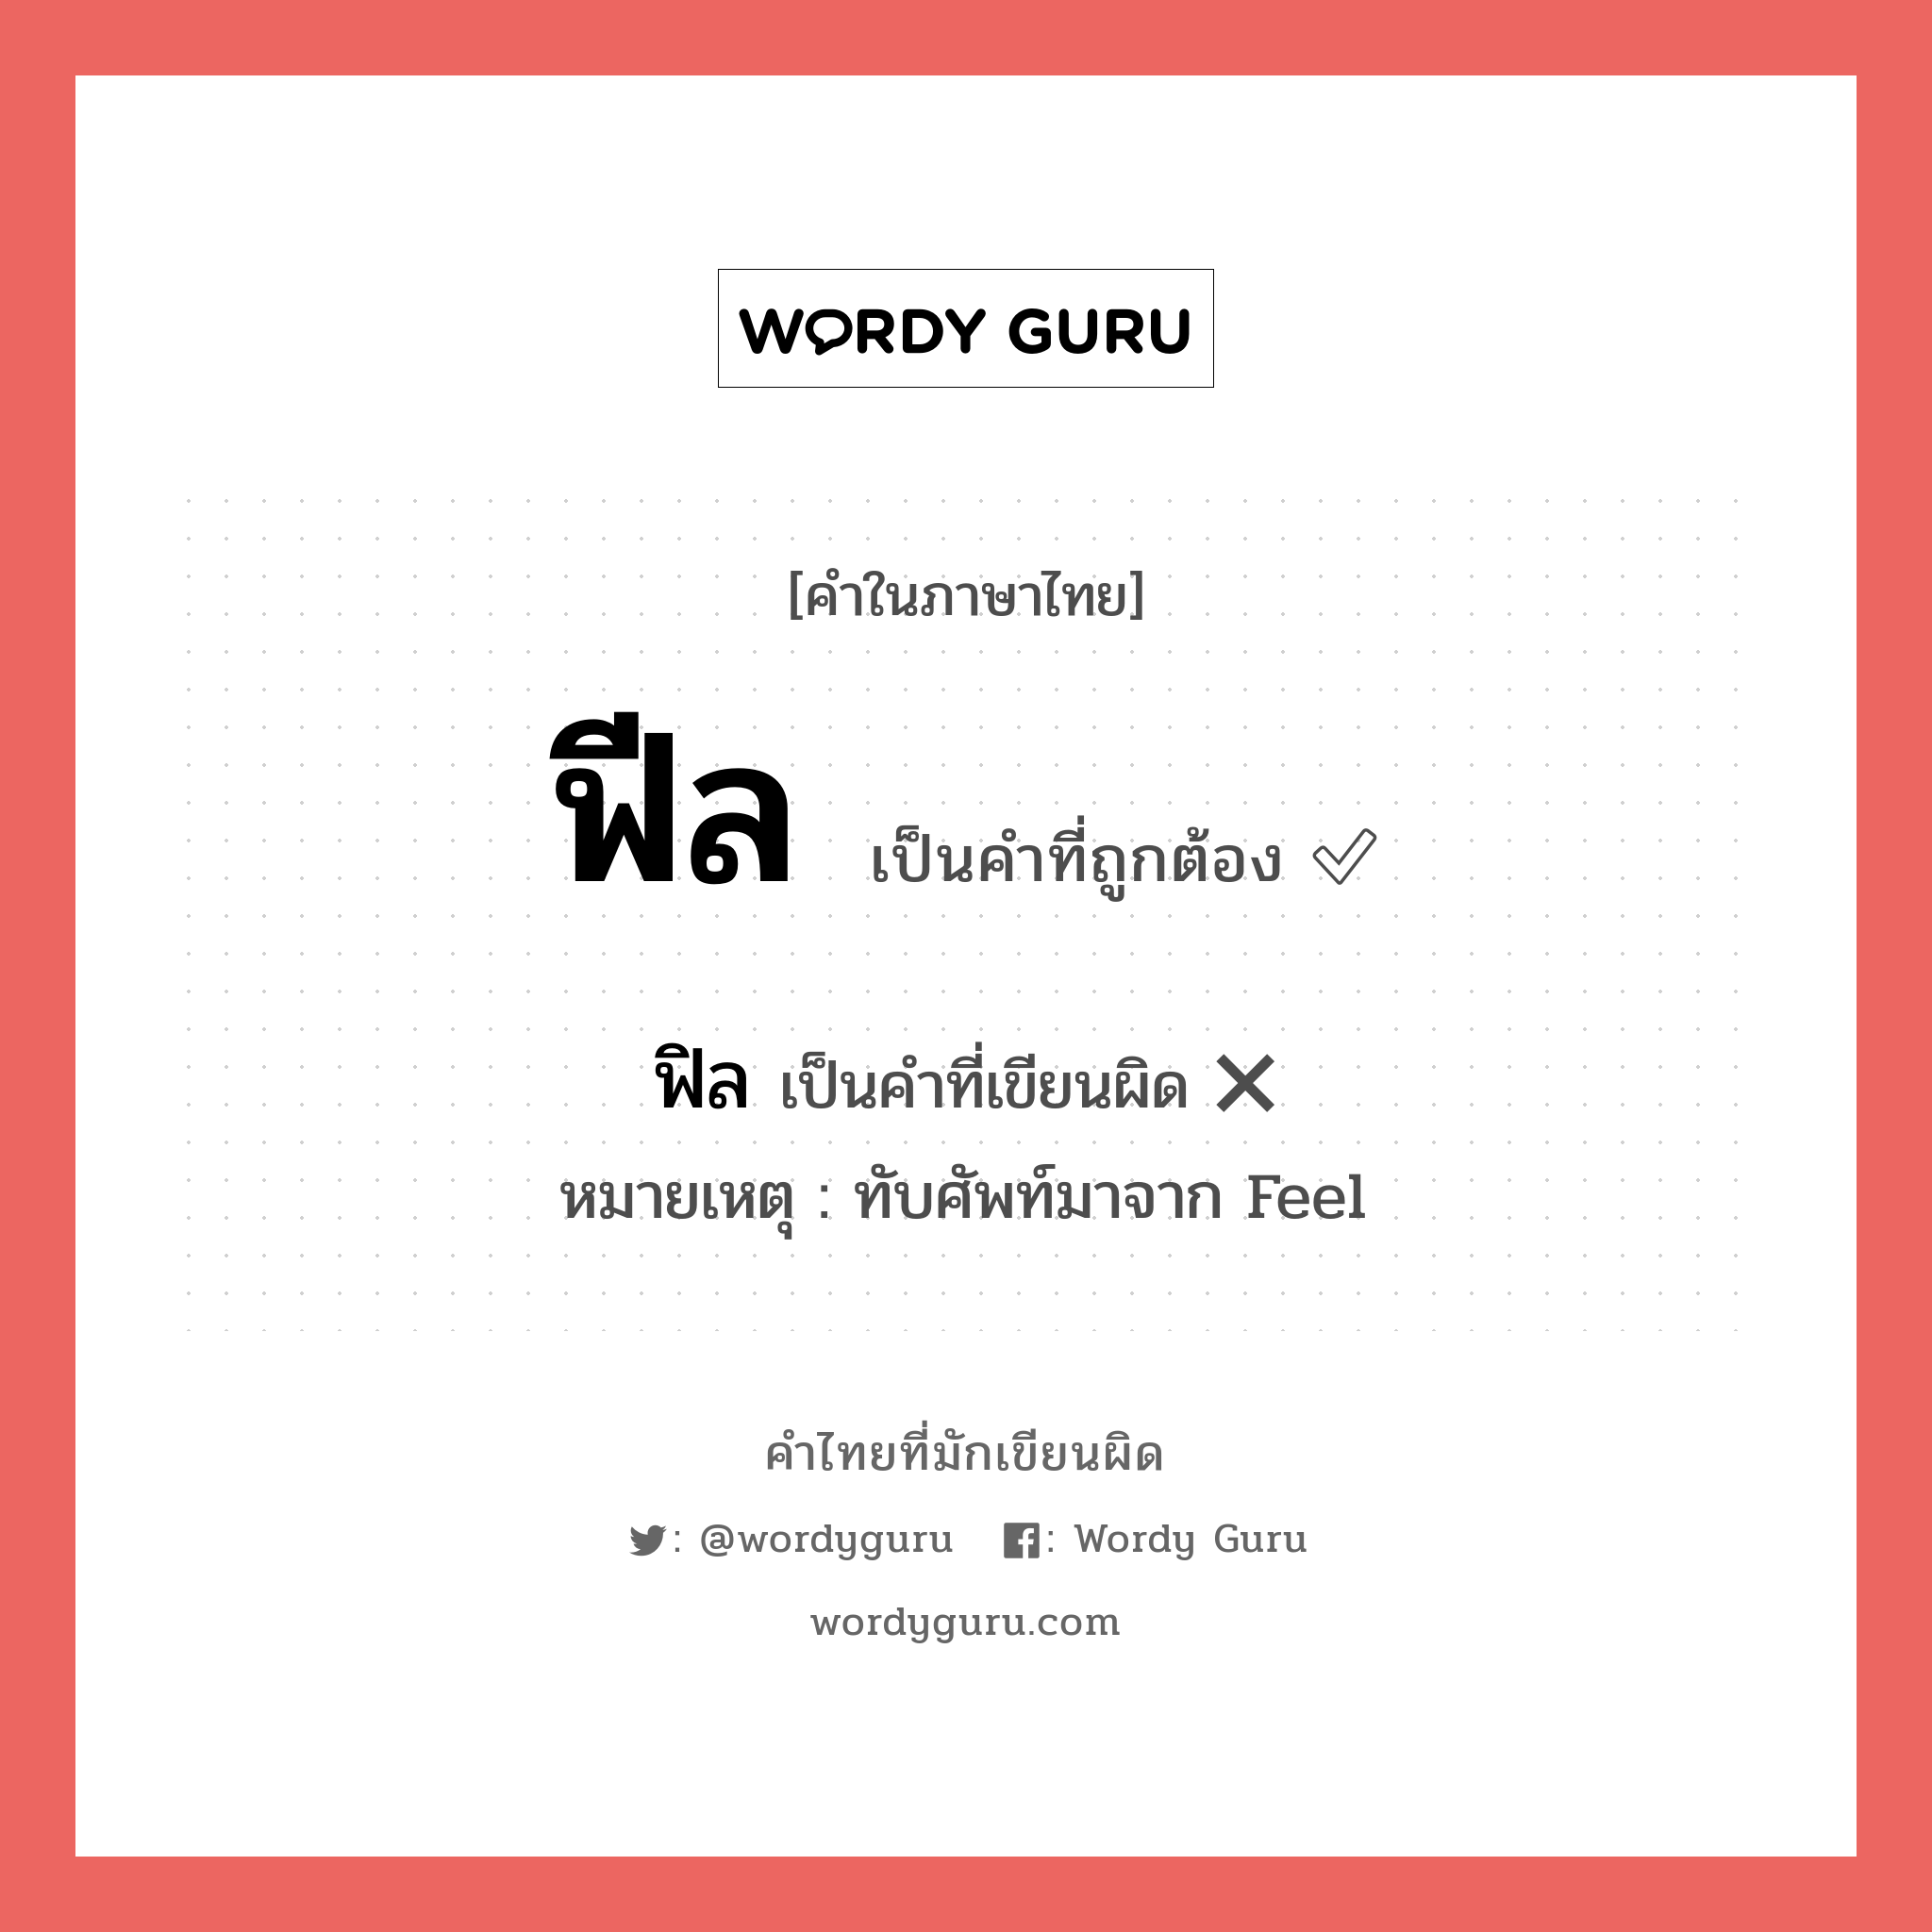 ฟีล หรือ ฟิว เขียนยังไง? คำไหนเขียนถูก?, คำในภาษาไทยที่มักเขียนผิด ฟีล คำที่ผิด ❌ ฟิล หมายเหตุ ทับศัพท์มาจาก Feel